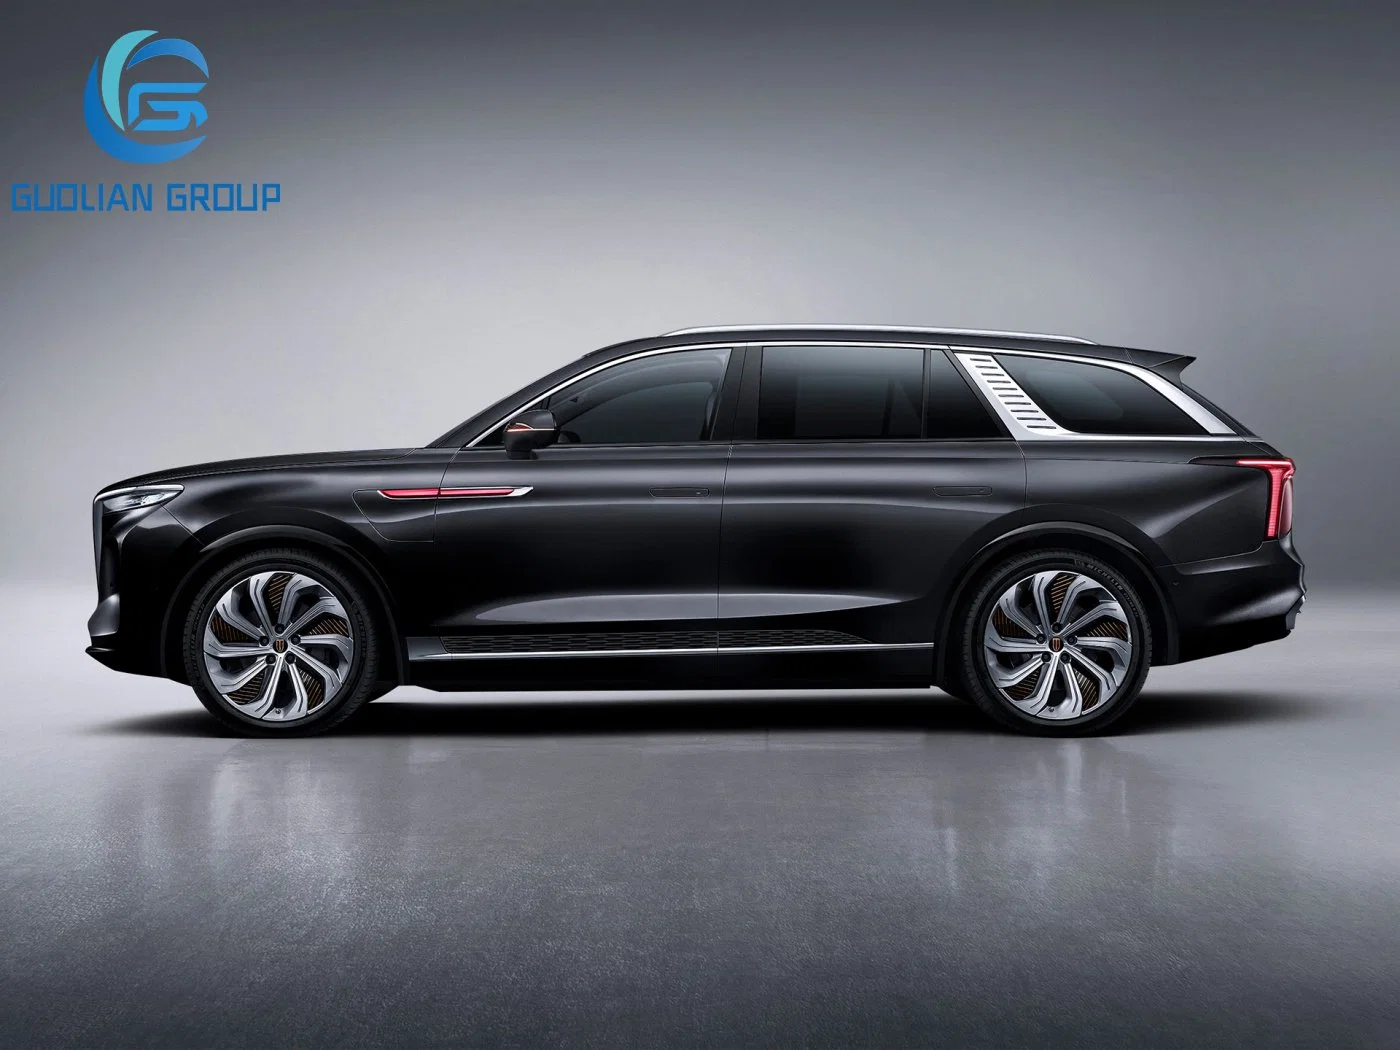 Modèle E-HS9 d'occasion Hongqi en stock voiture électrique 2021 510 km Qichang 6 sièges voiture électrique voiture d'occasion voiture électrique auto électrique Promotion voiture en cours